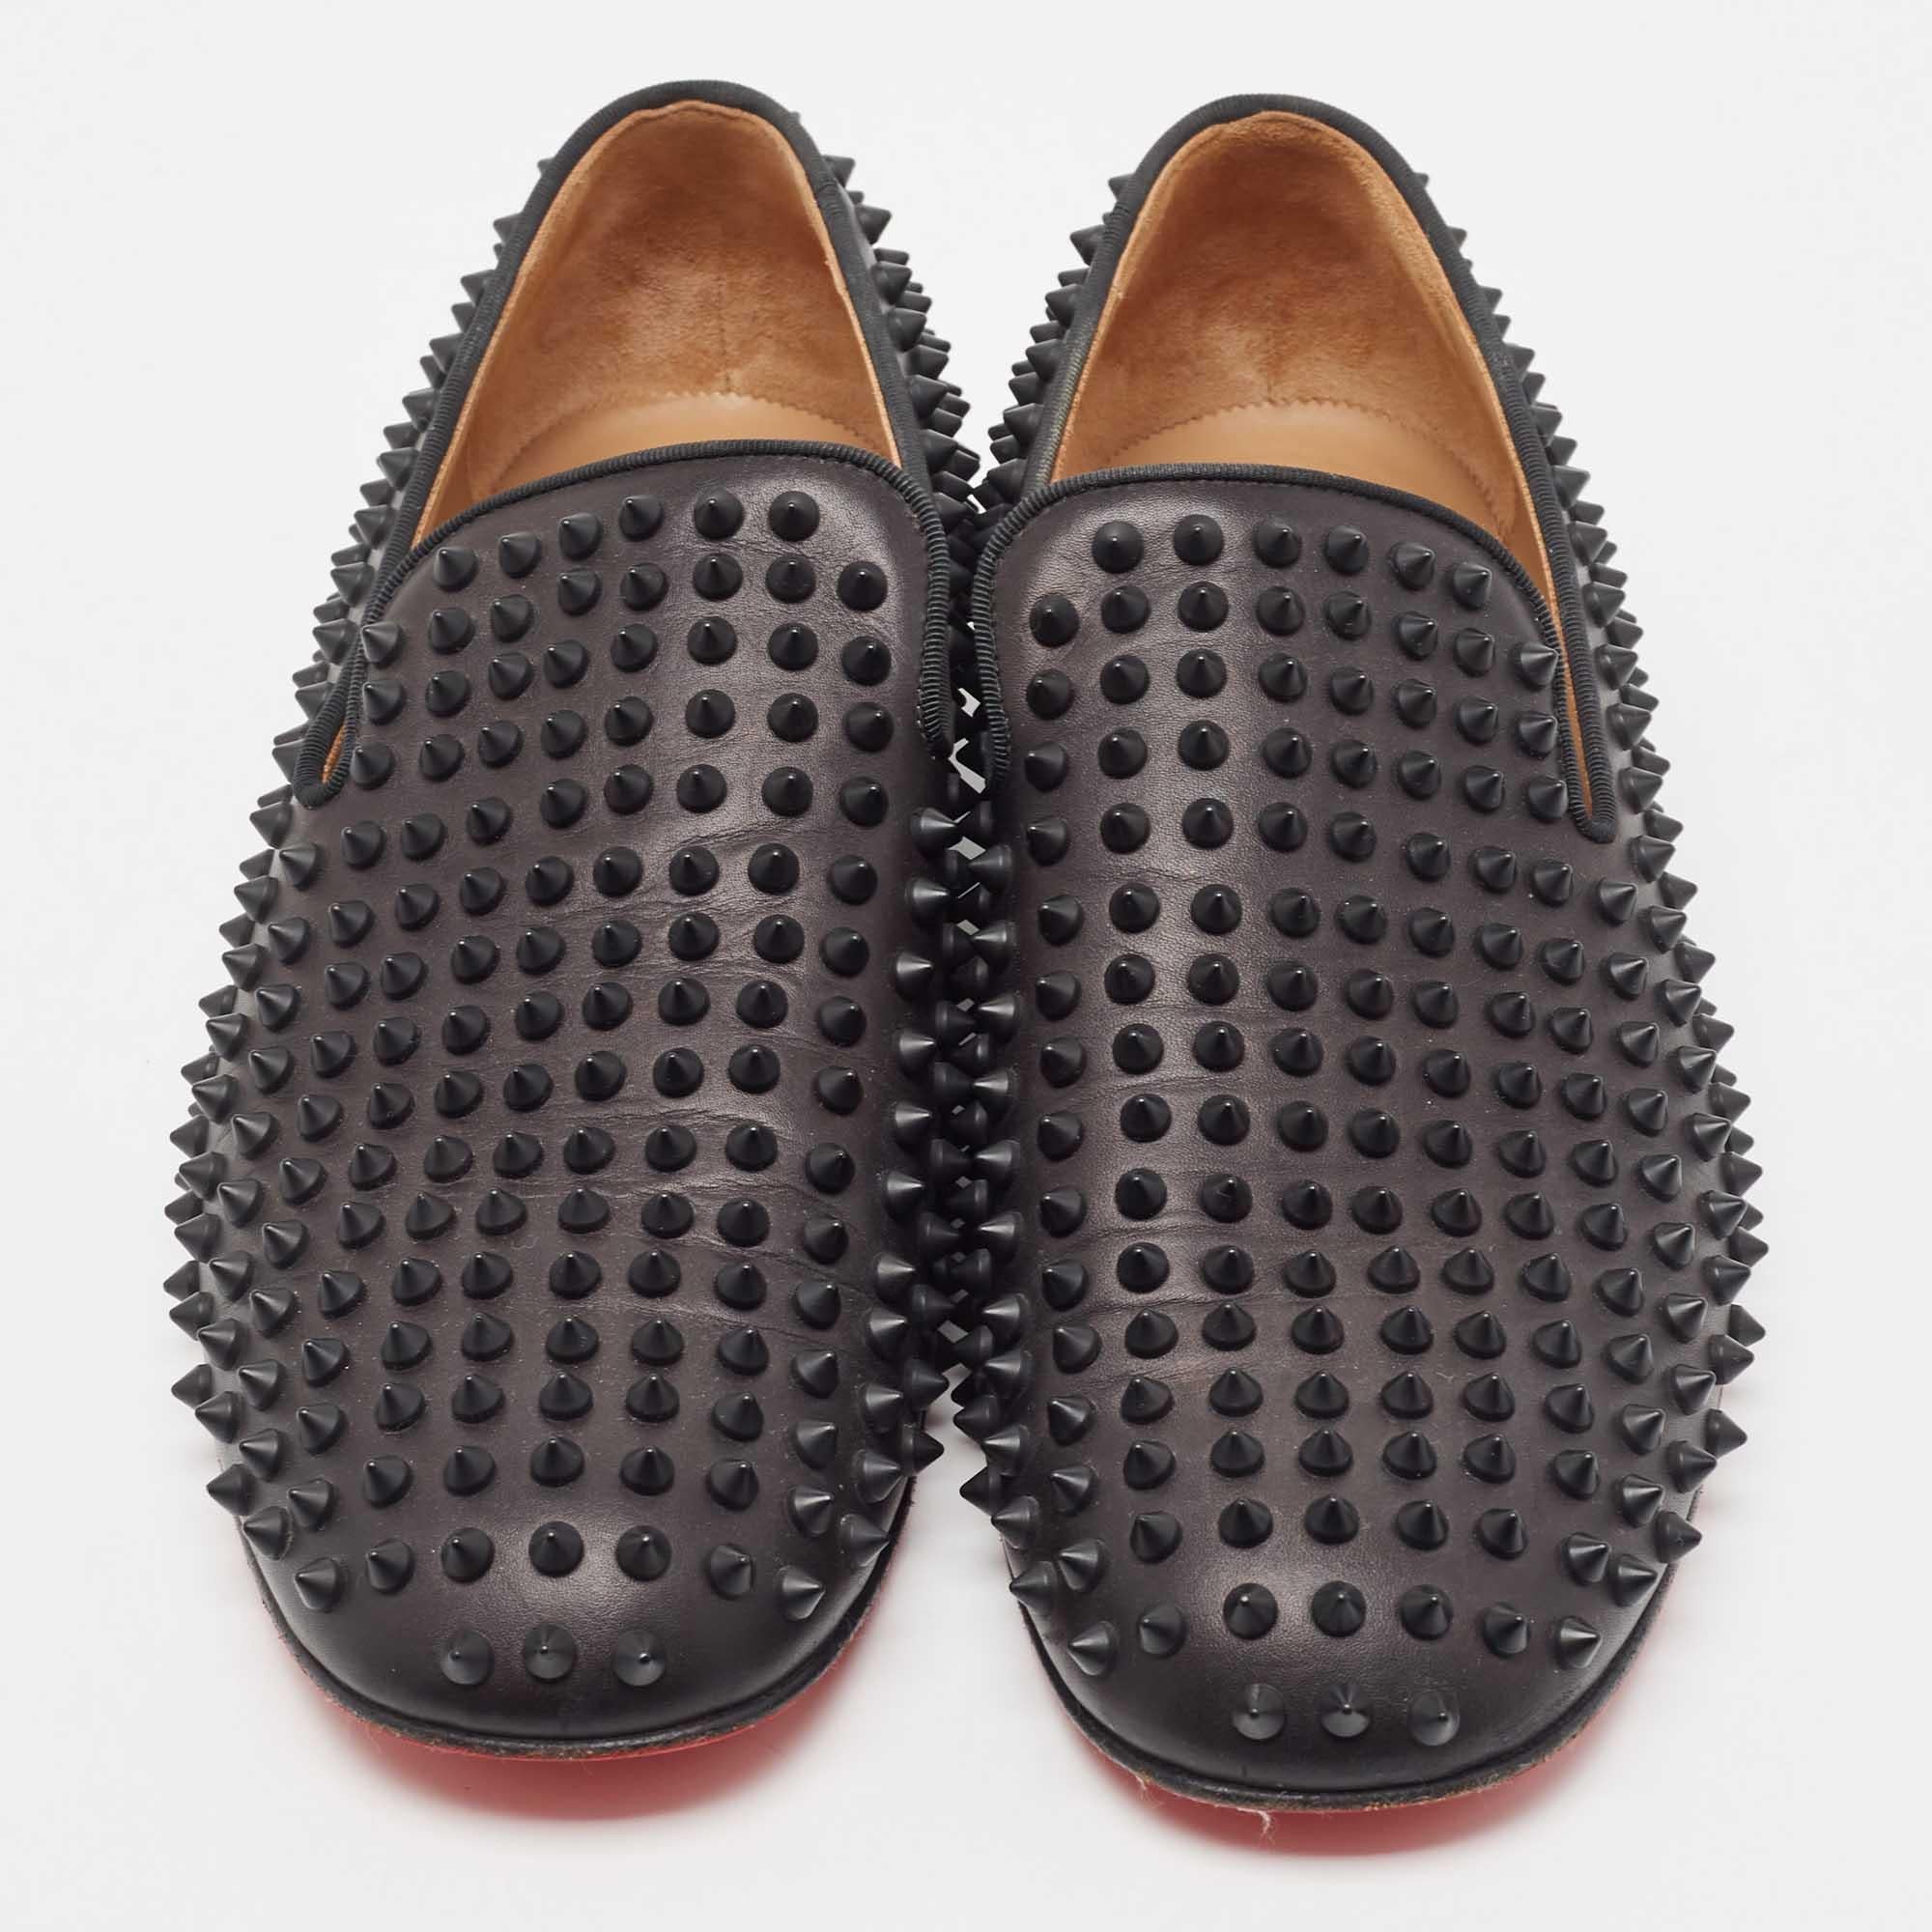 Praktisch, modisch und langlebig - diese Christain Louboutin Spike Loafers sind sorgfältig hergestellt, um Ihren täglichen Stil zu begleiten. Sie werden aus den besten MATERIALEN hergestellt und sind ein wertvoller Kauf.

Enthält: